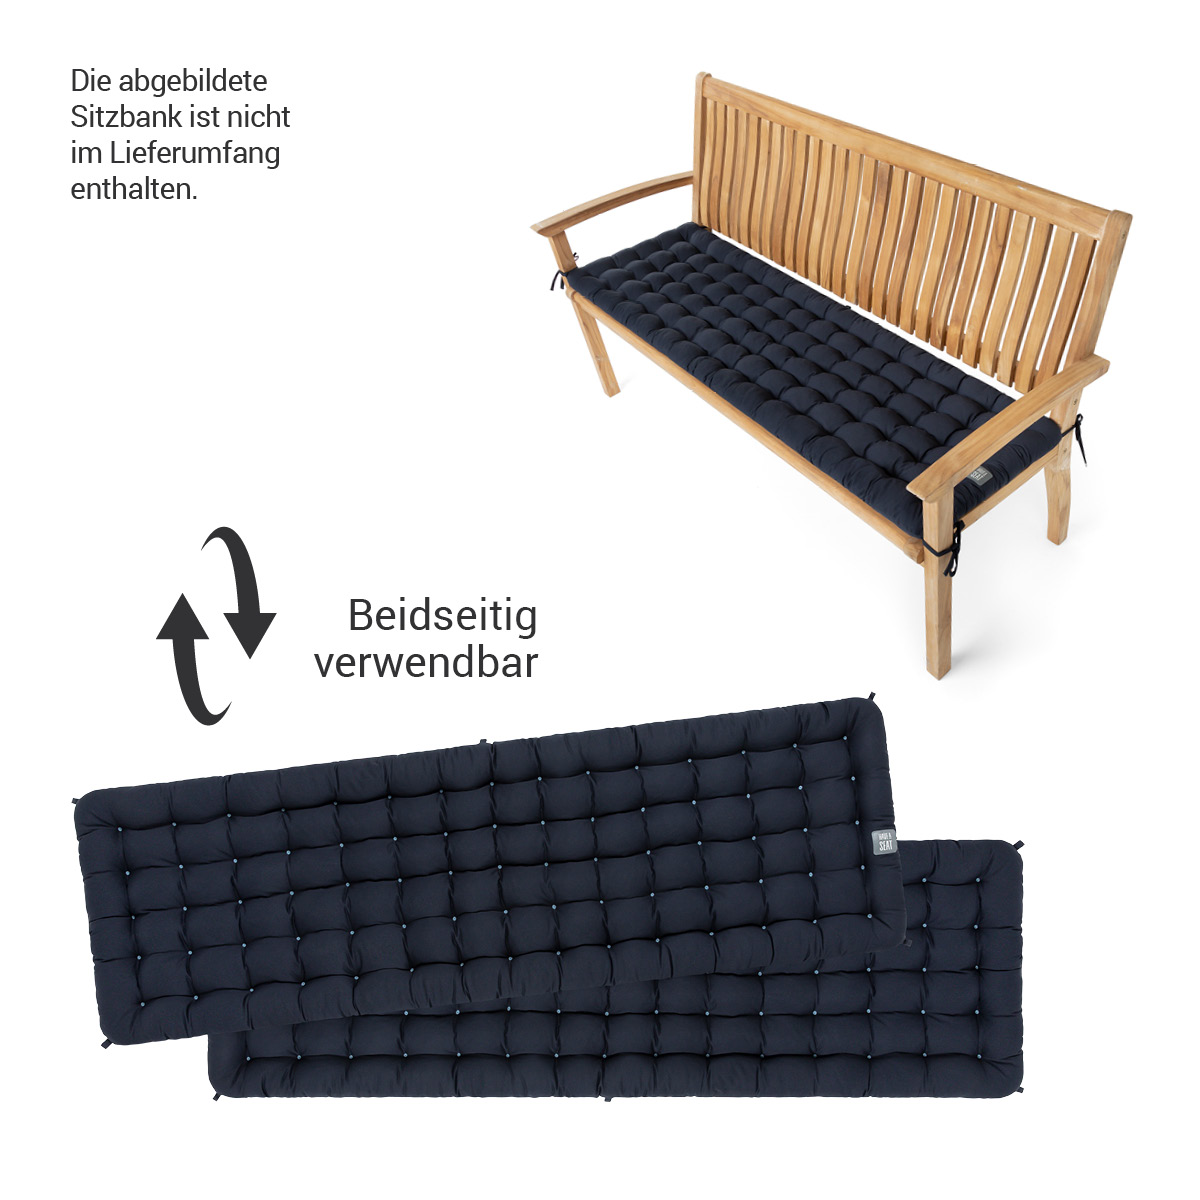 HAVE A SEAT Living Bankauflage dunkelblau für Gartenbank | beidseitig verwendbar, die abgebildete Gartenbank ist nicht im Lieferumfang enthalten